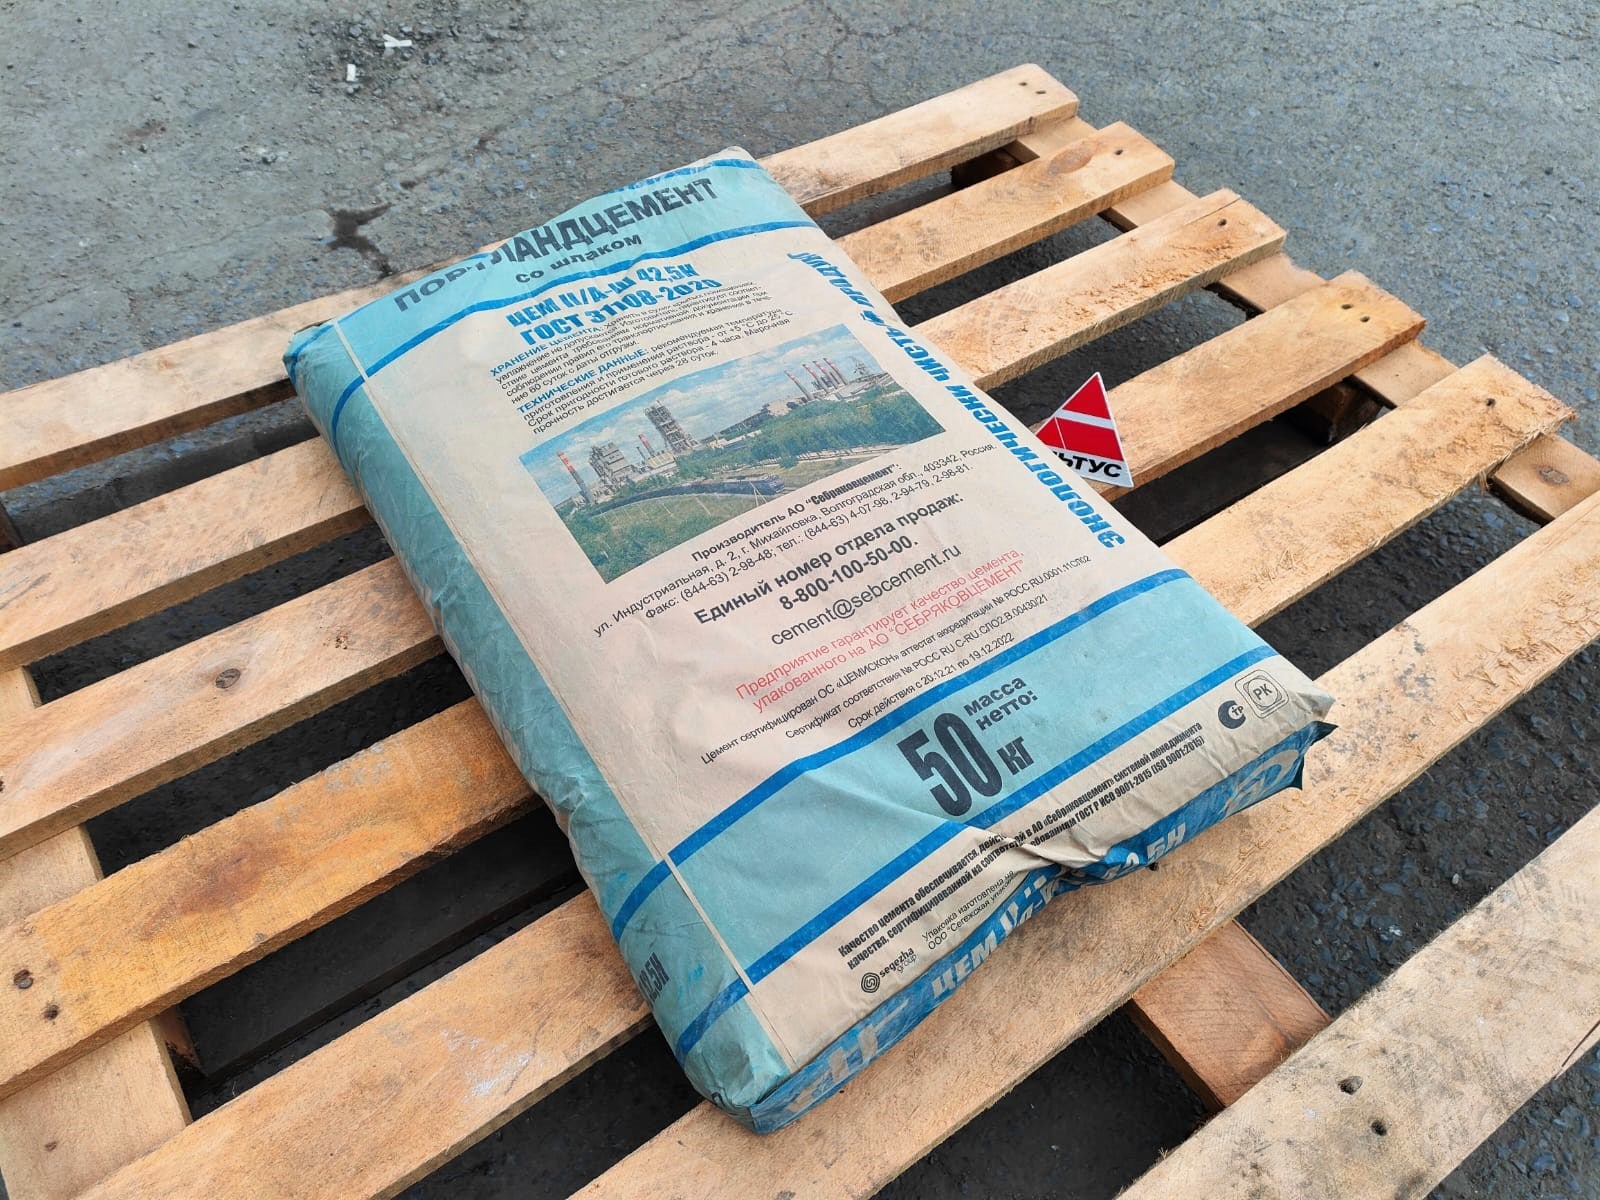 Цемент - Портландцемент (Себряковцемент) в упаковке по 50 кг